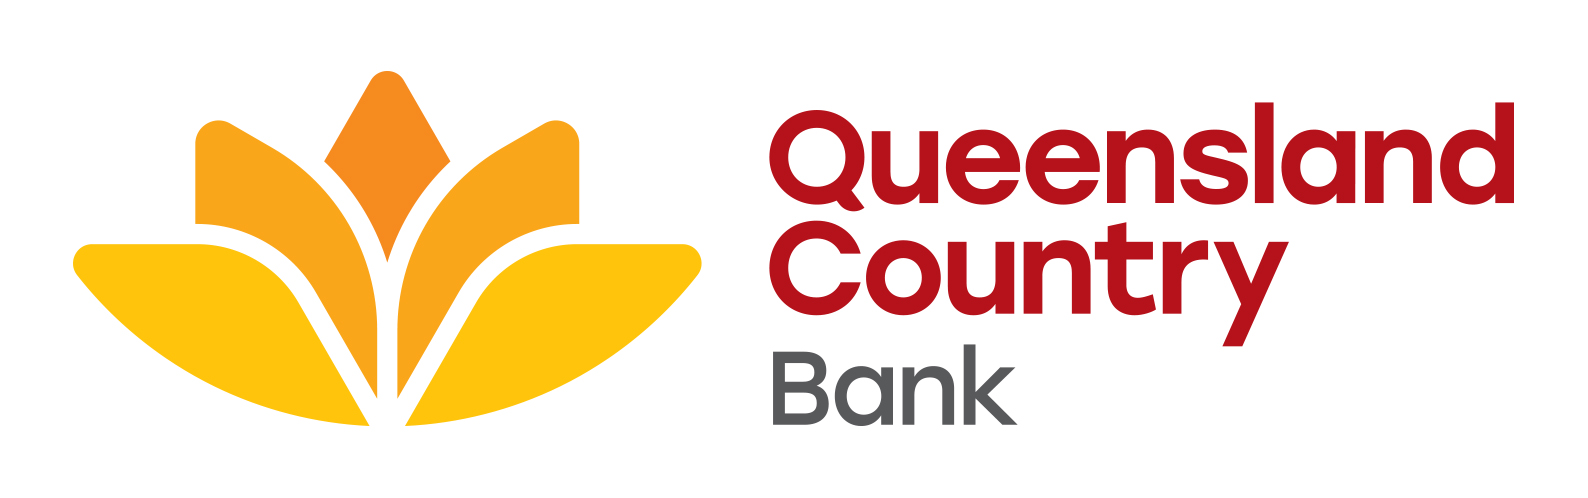 Queensland Bank